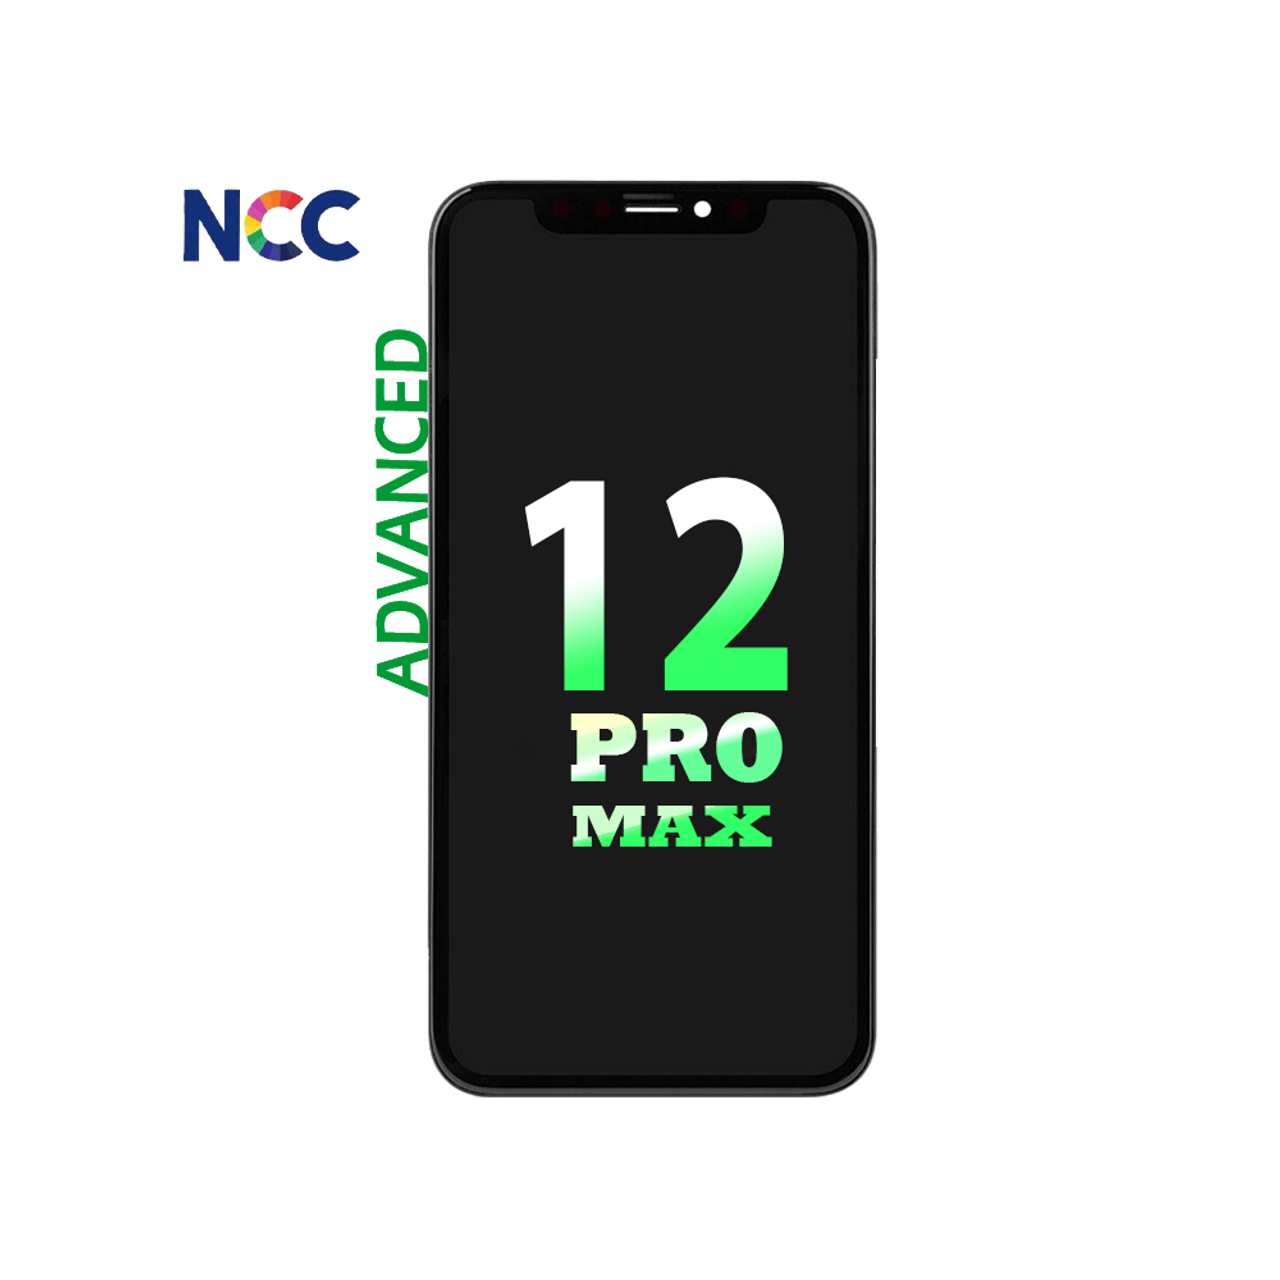 iPhone 12 Pro Max Advanced ncc